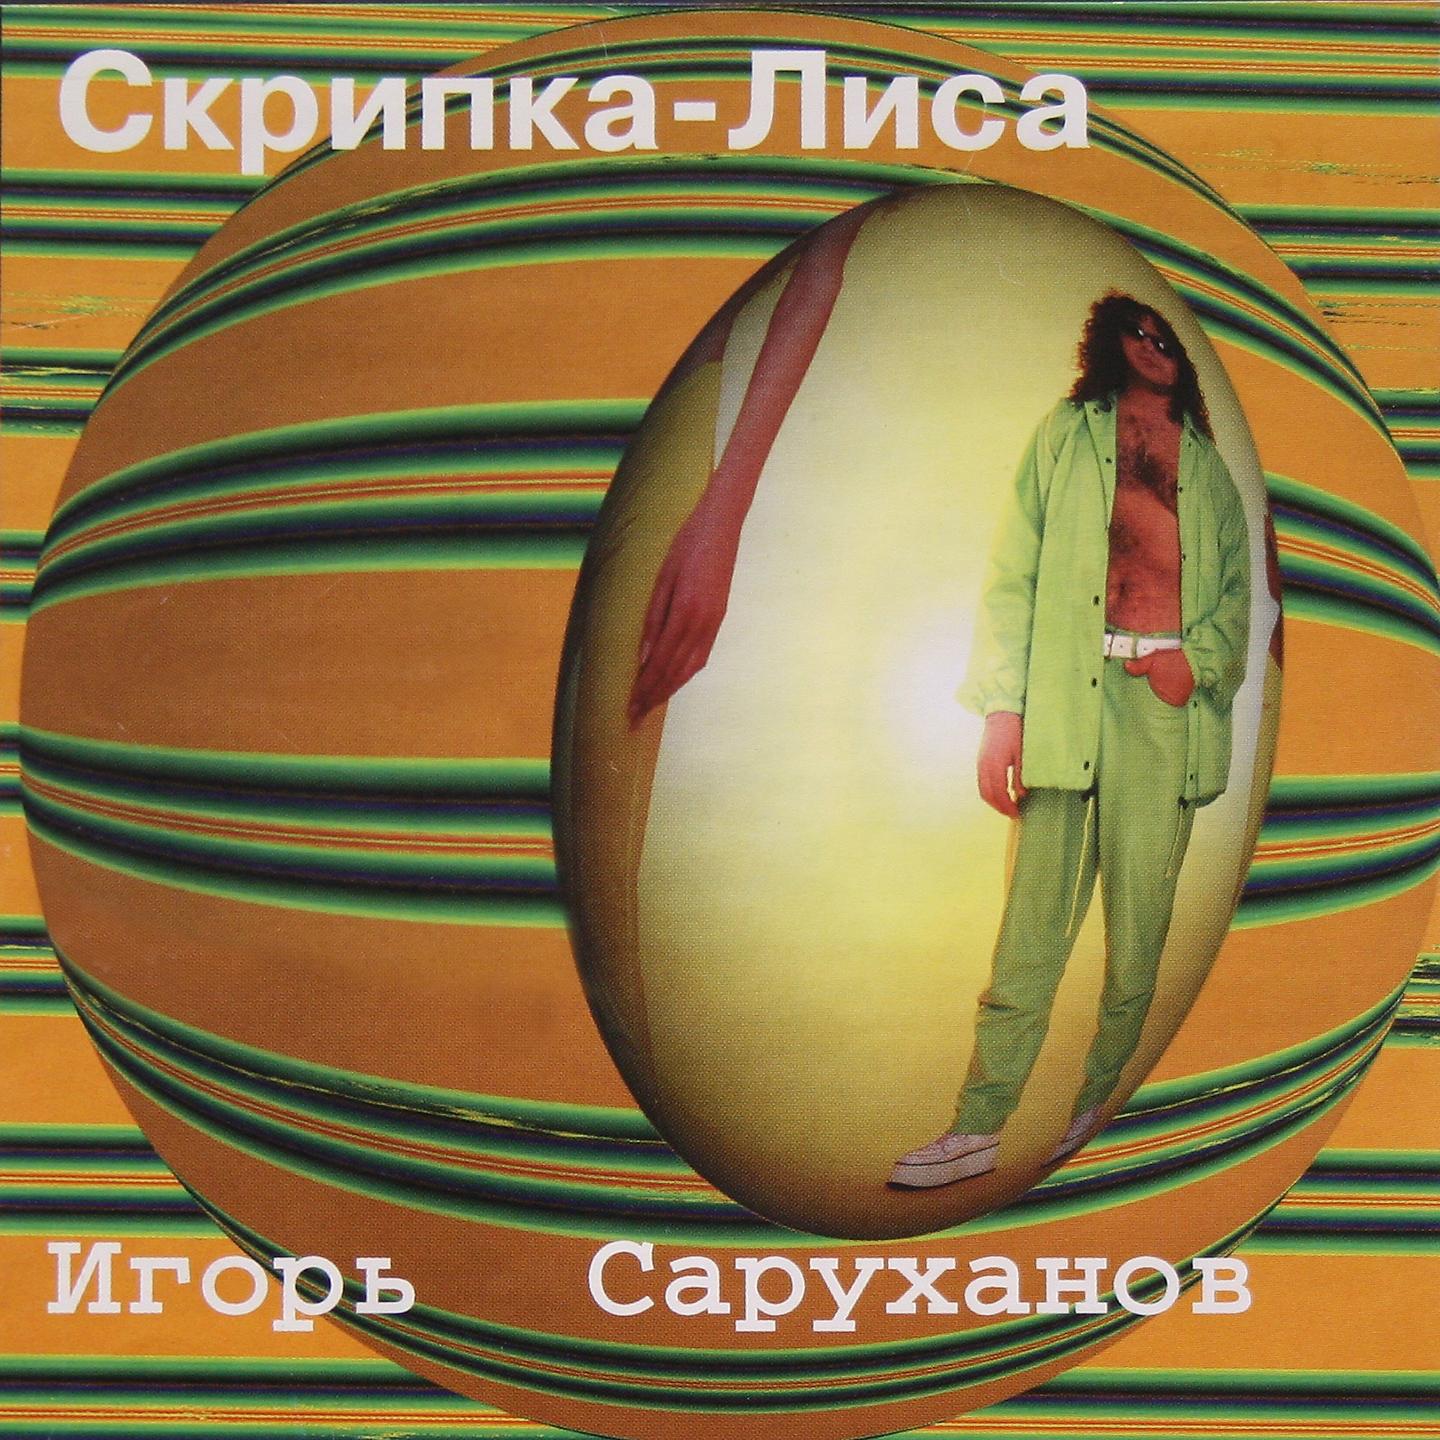 Песня саруханова скрипка лиса. Скрипка лиса Игоря Саруханова. 1997 - Скрипка-лиса.